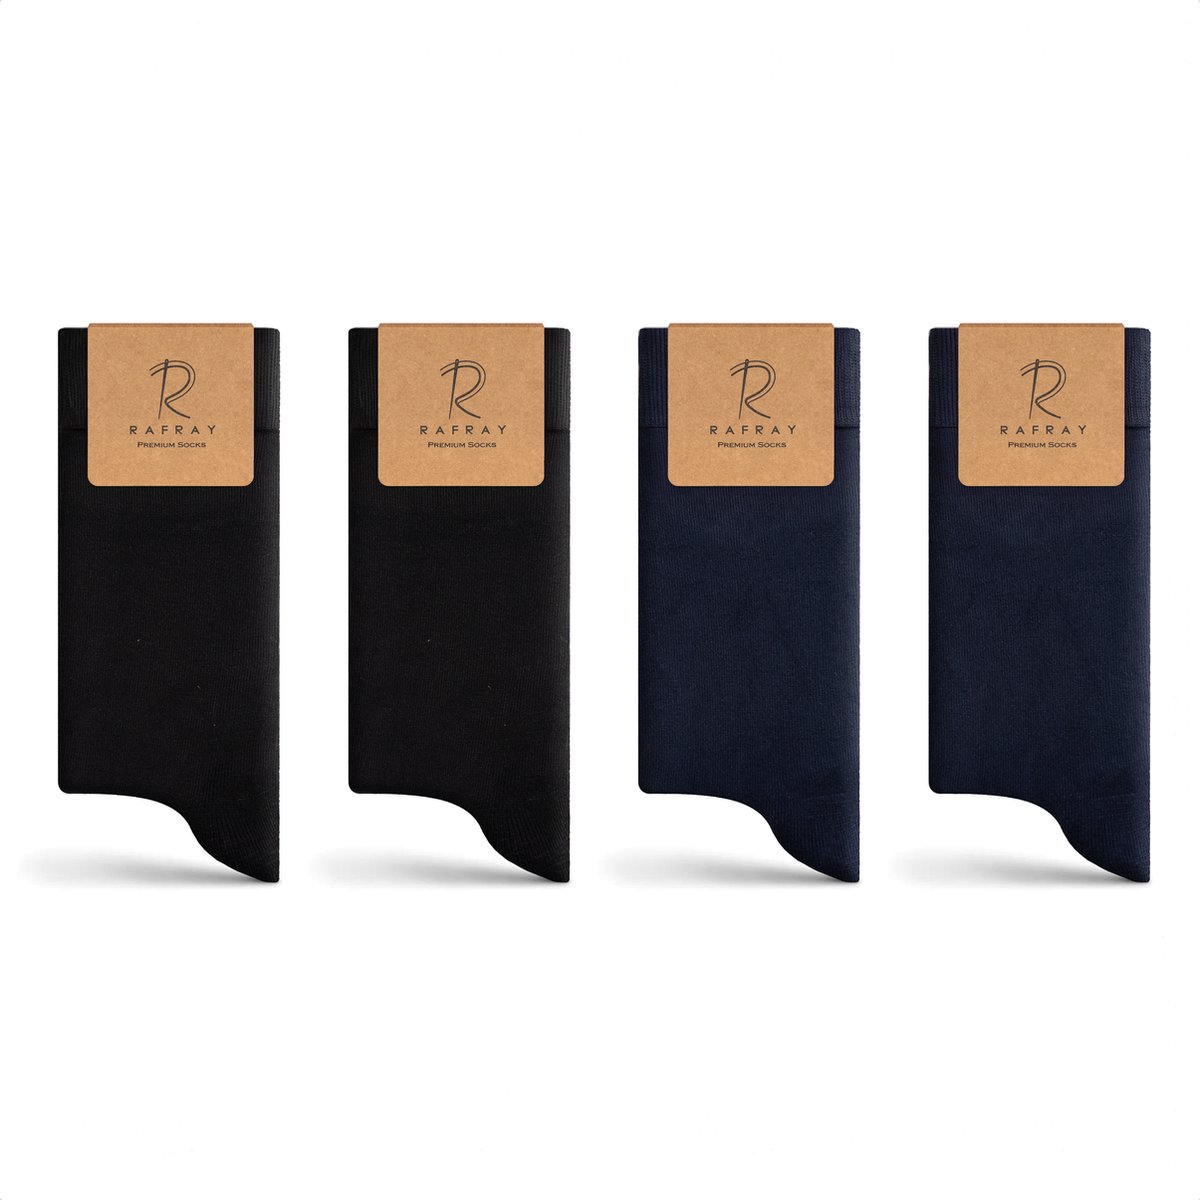 Rafray Socks - Premium Bamboe Sokken Gift box - Premium Bamboo Socks - Zwart & Blauw - 4 paar - Maat 40-44